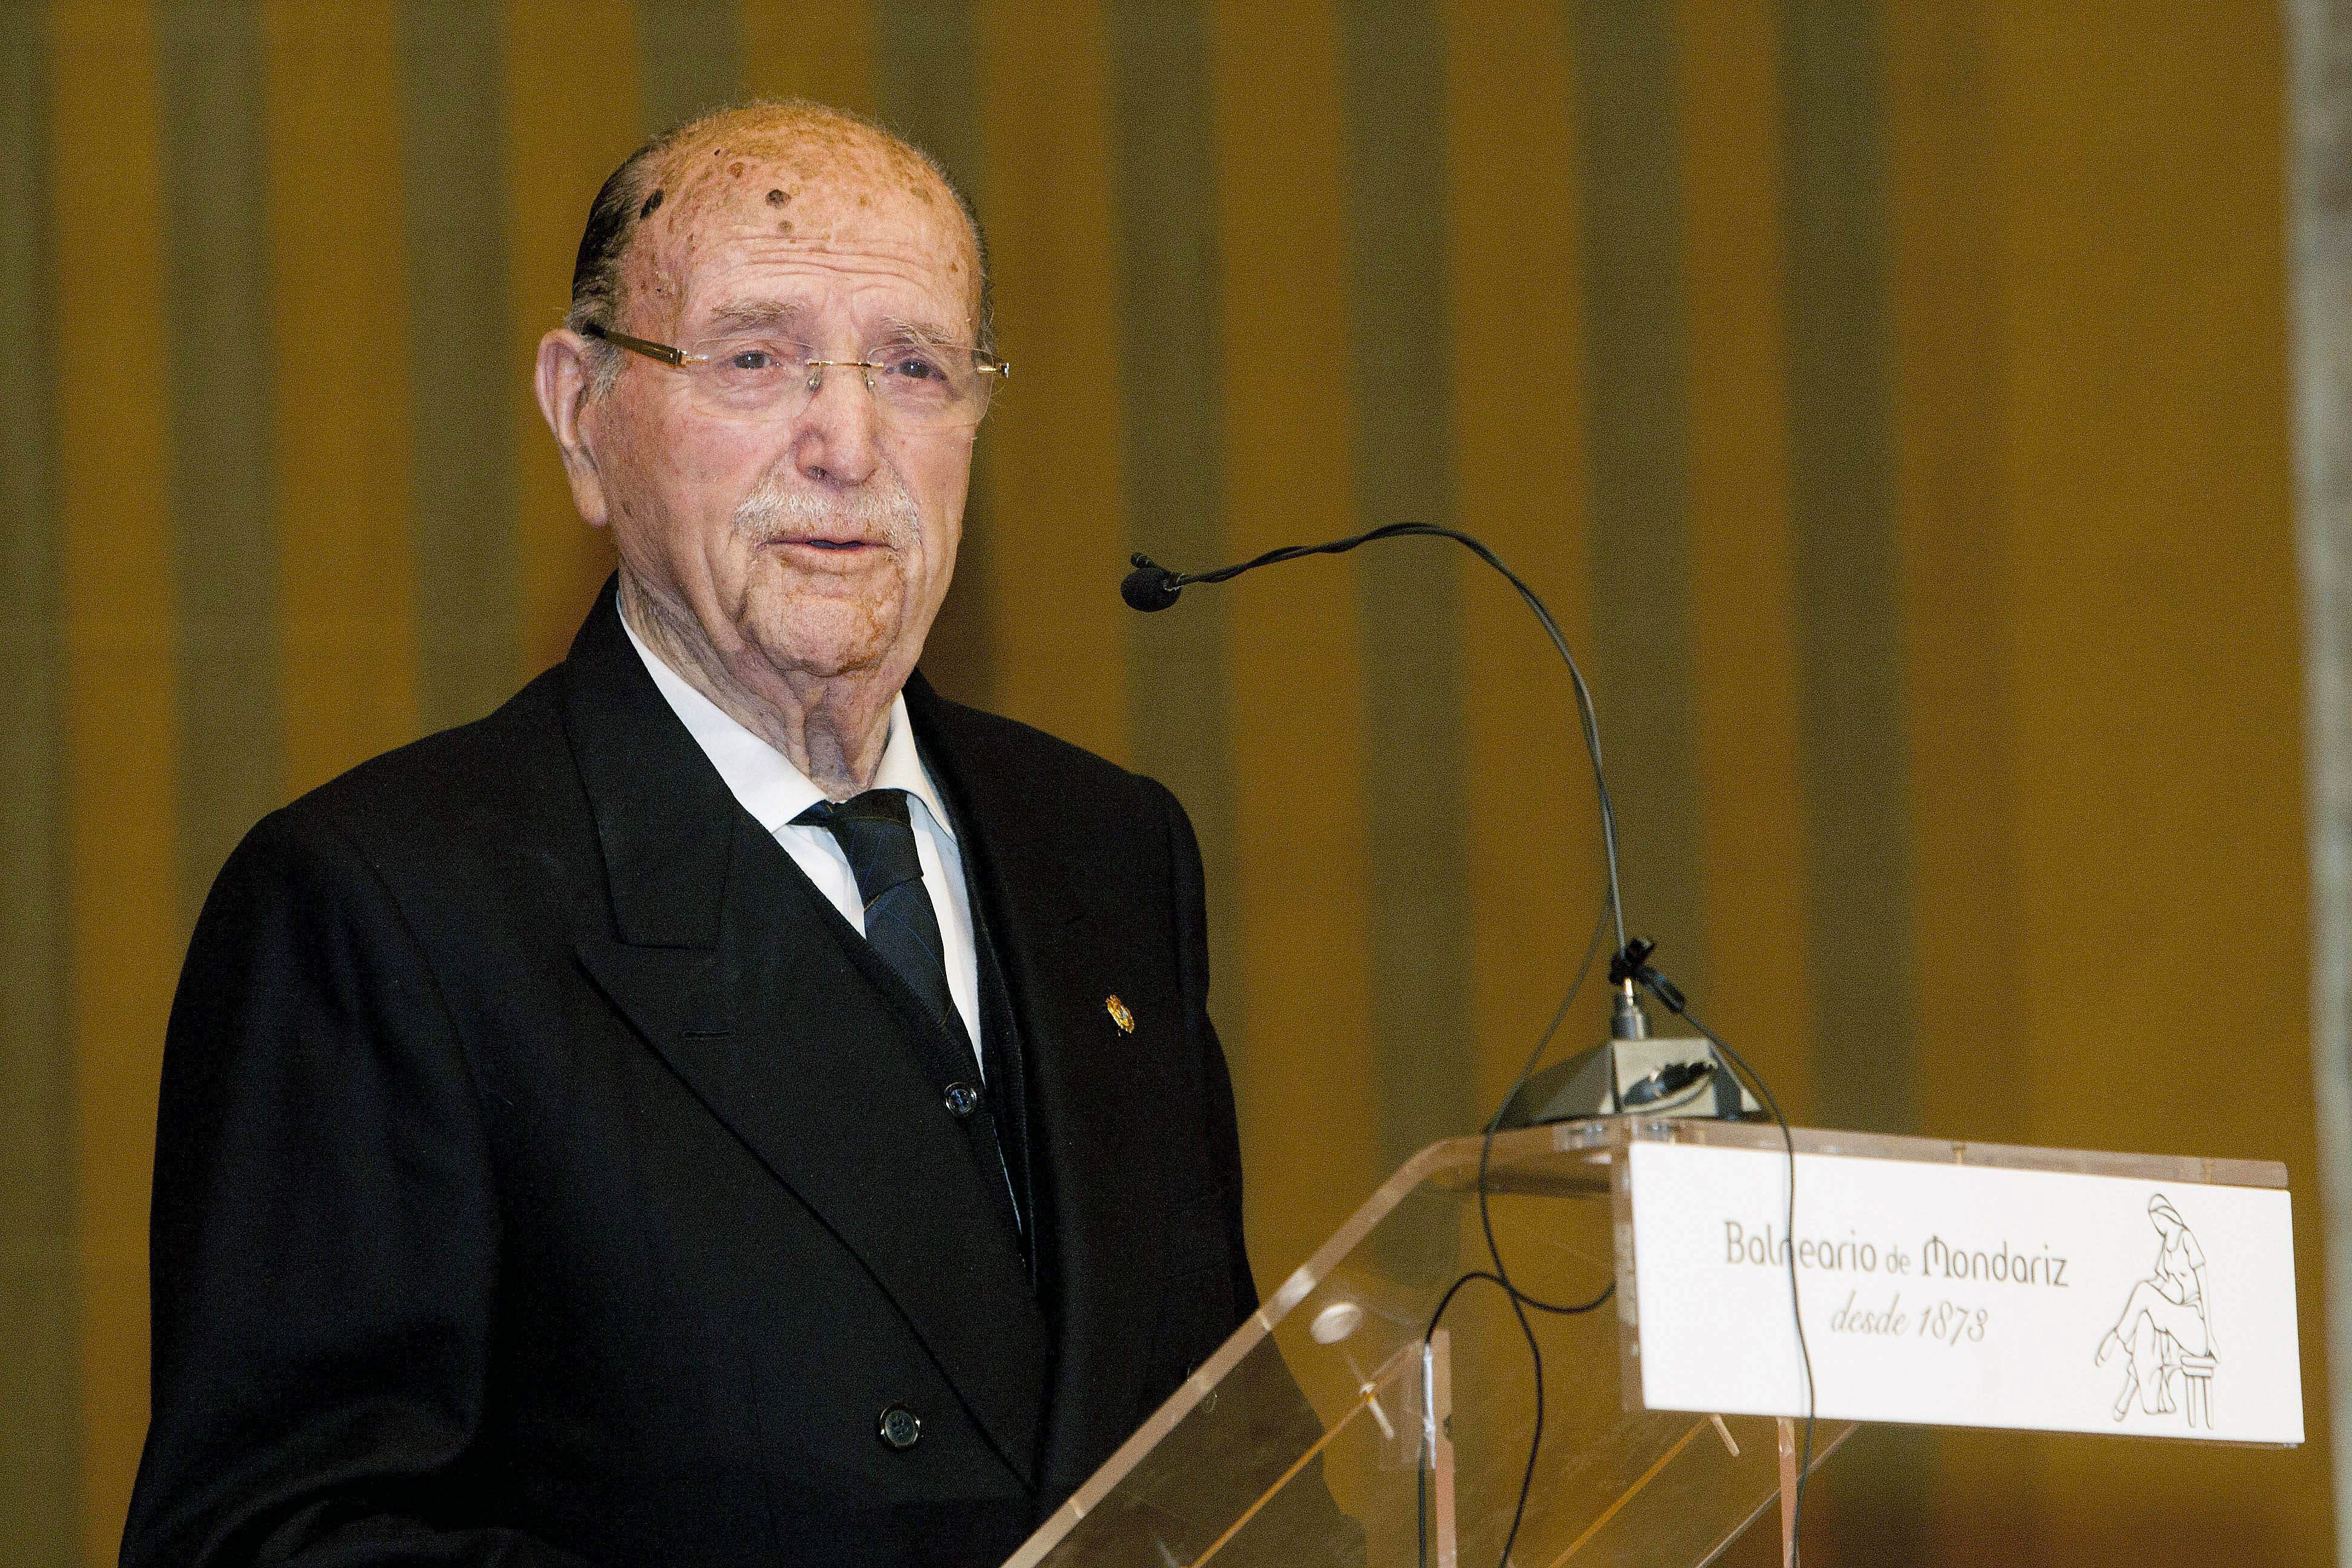 El expresidente gallego Gerardo Fernández Albor durante su intervención en un homenaje en Modariz. EFE/Archivo